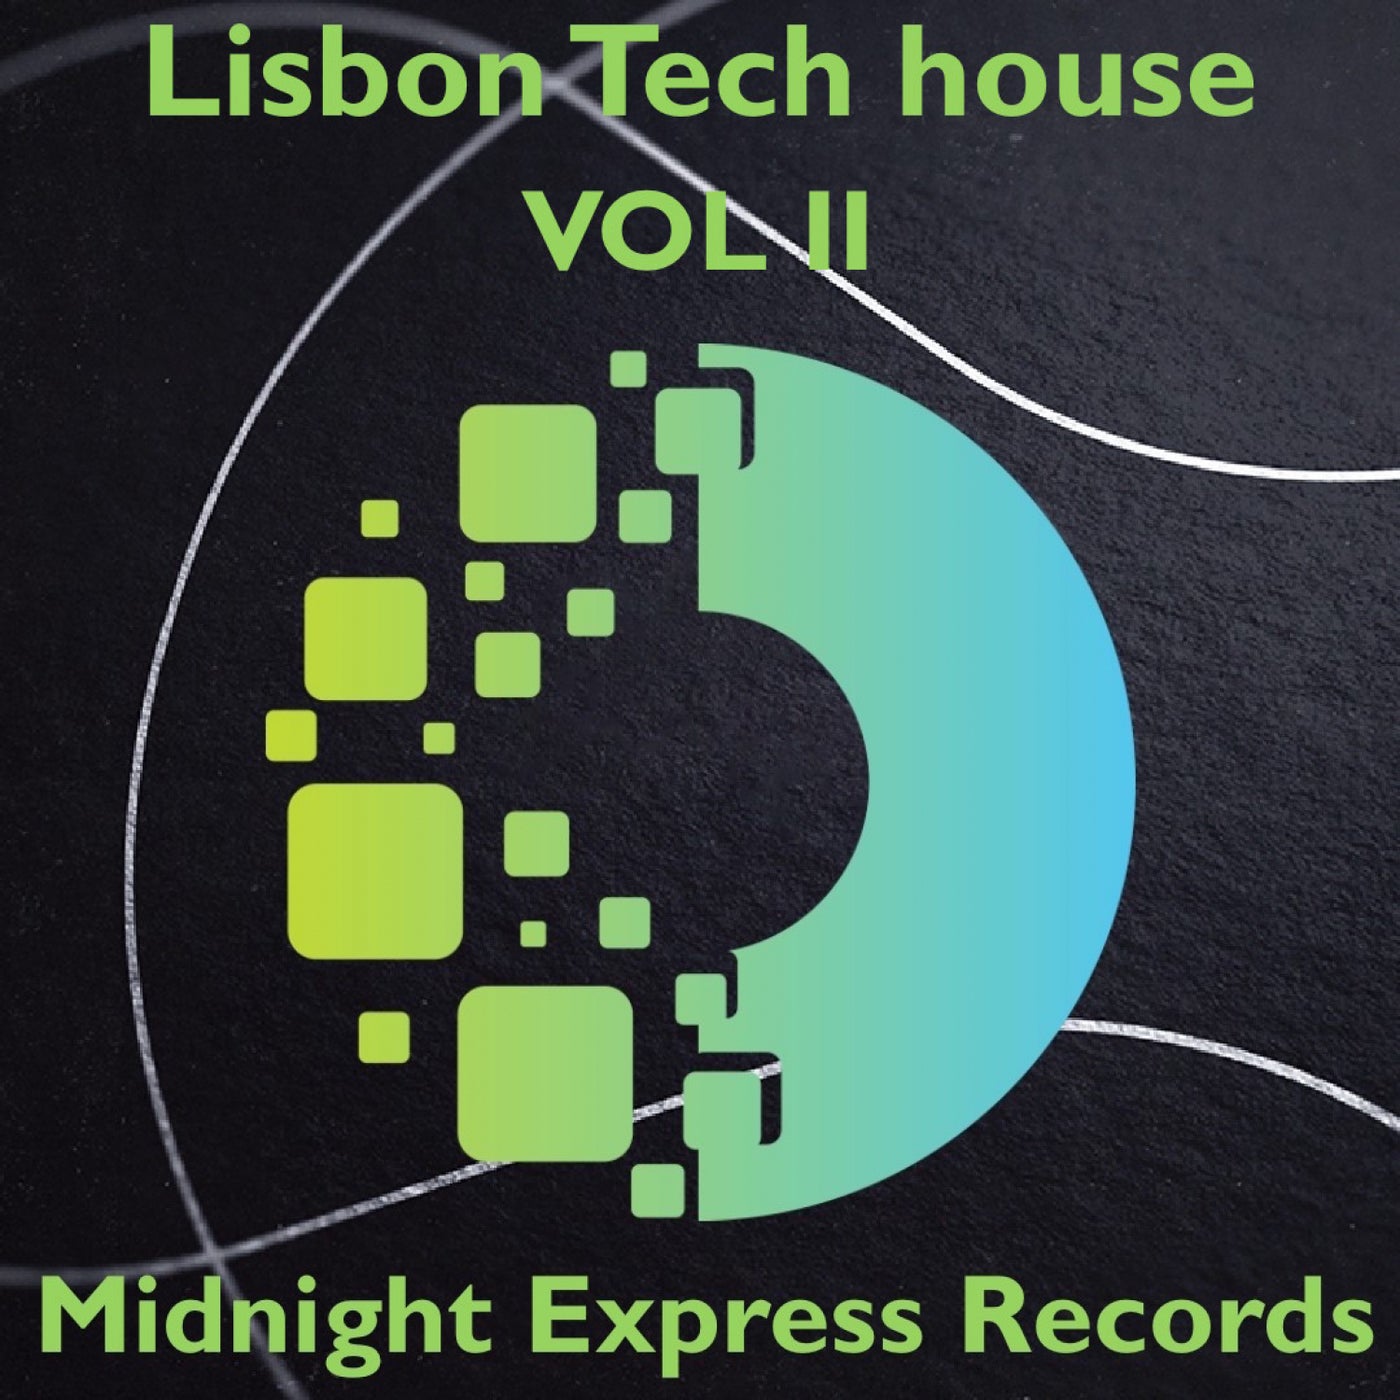 Lisbon Tech house VOL II